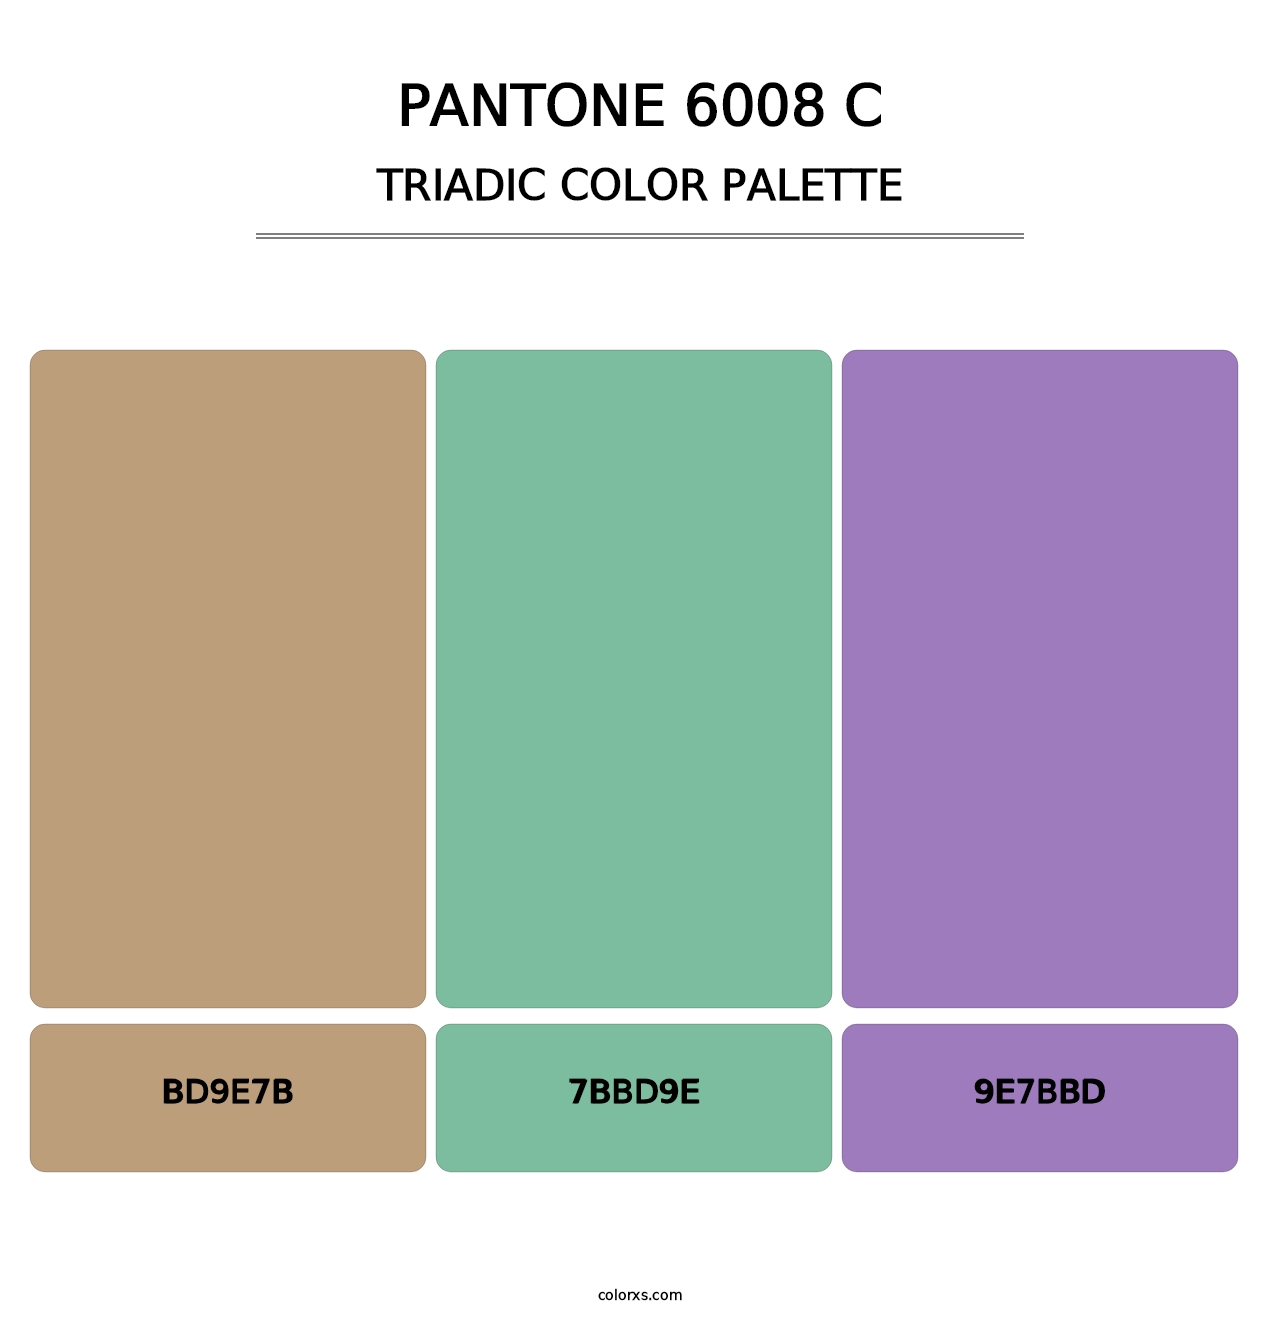 PANTONE 6008 C - Triadic Color Palette